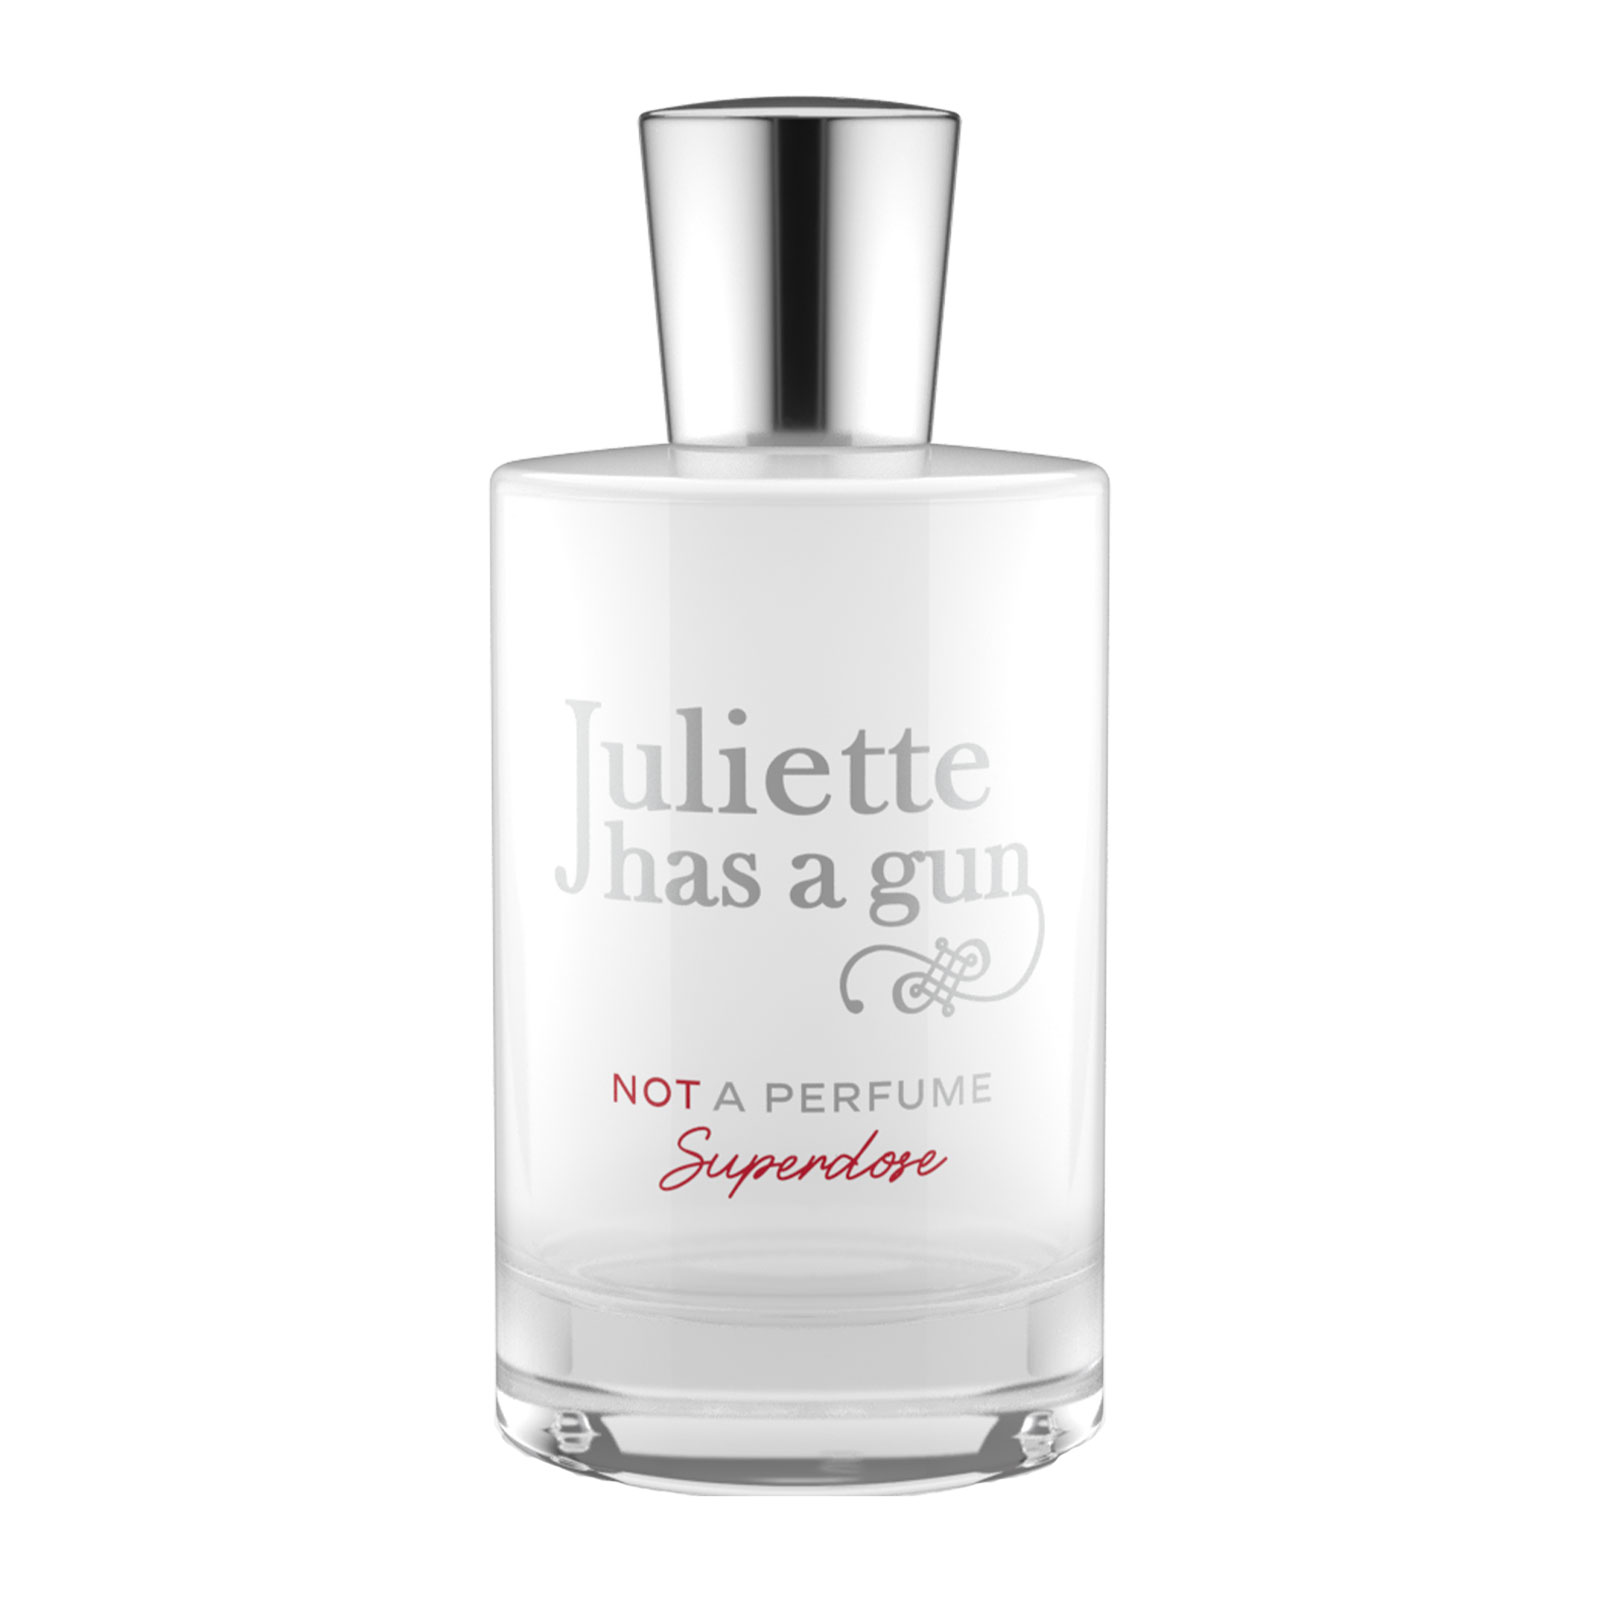 Juliette Has A Gun Note A Perfume Superdose Eau De Parfum 100Ml